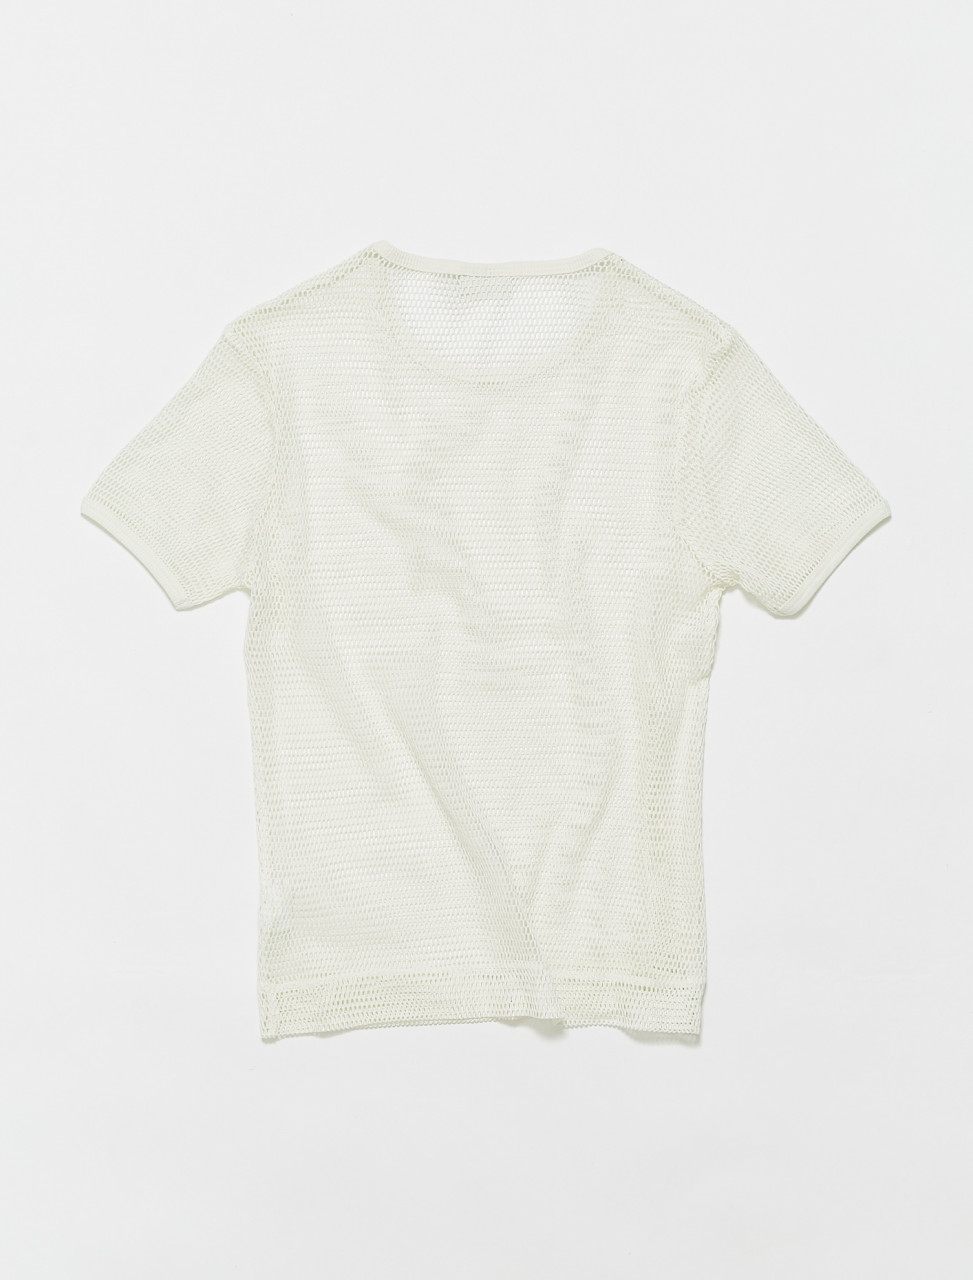 Dries Van Noten Hadal Sheer T-Shirt in White | Voo Store Berlin ...